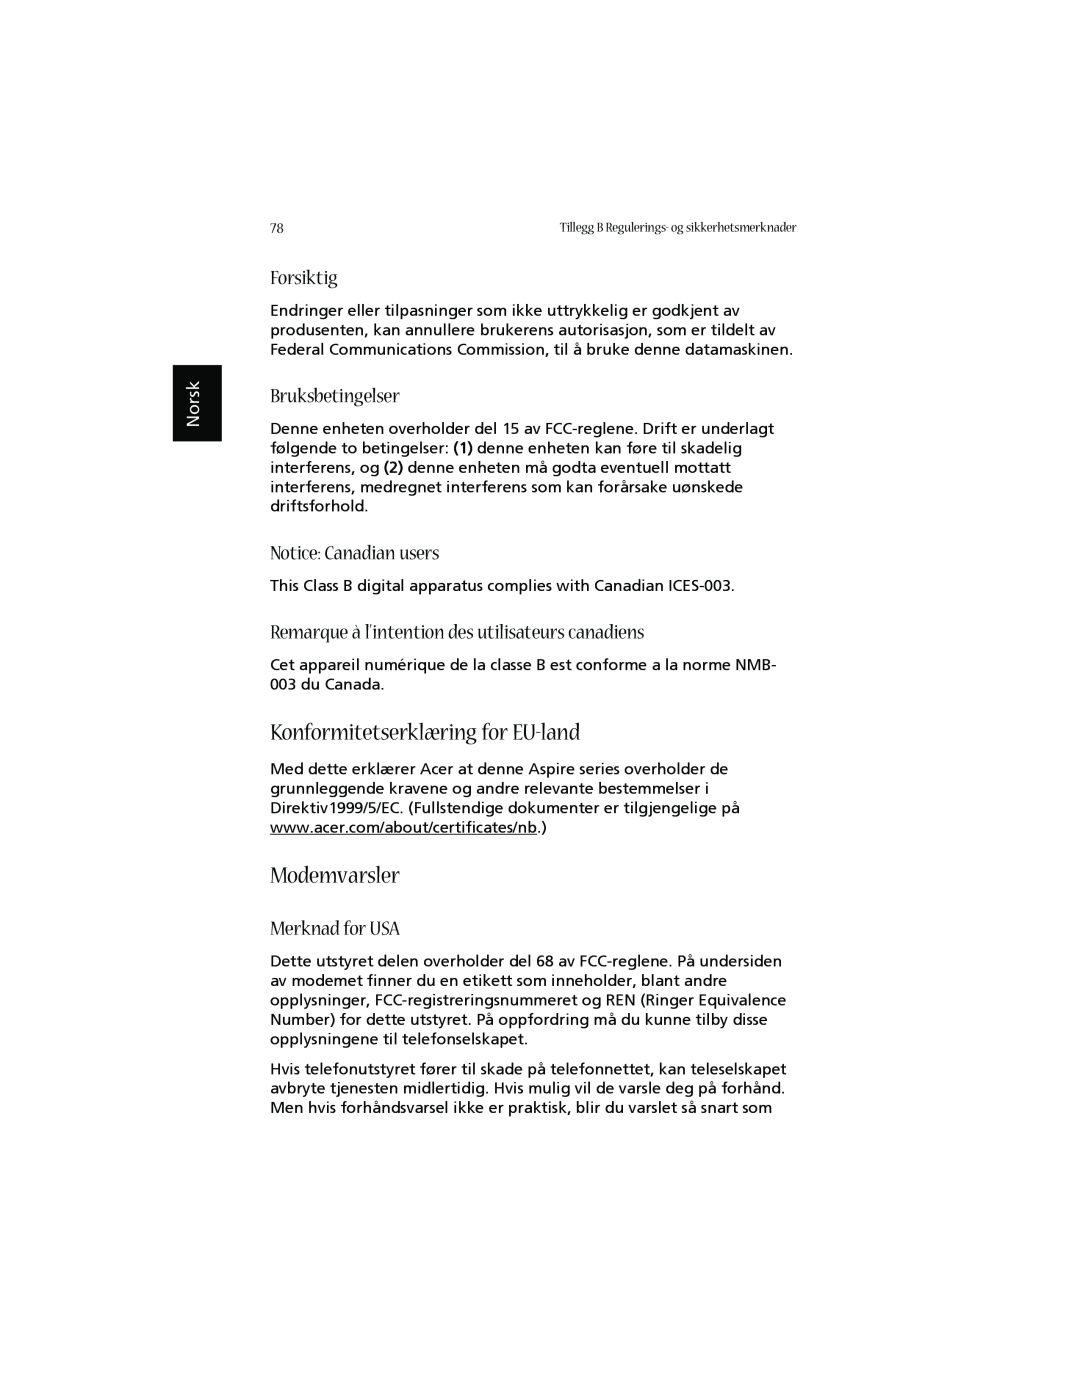 Acer 1660 manual Konformitetserklæring for EU-land, Modemvarsler, Forsiktig, Bruksbetingelser, Notice Canadian users, Norsk 